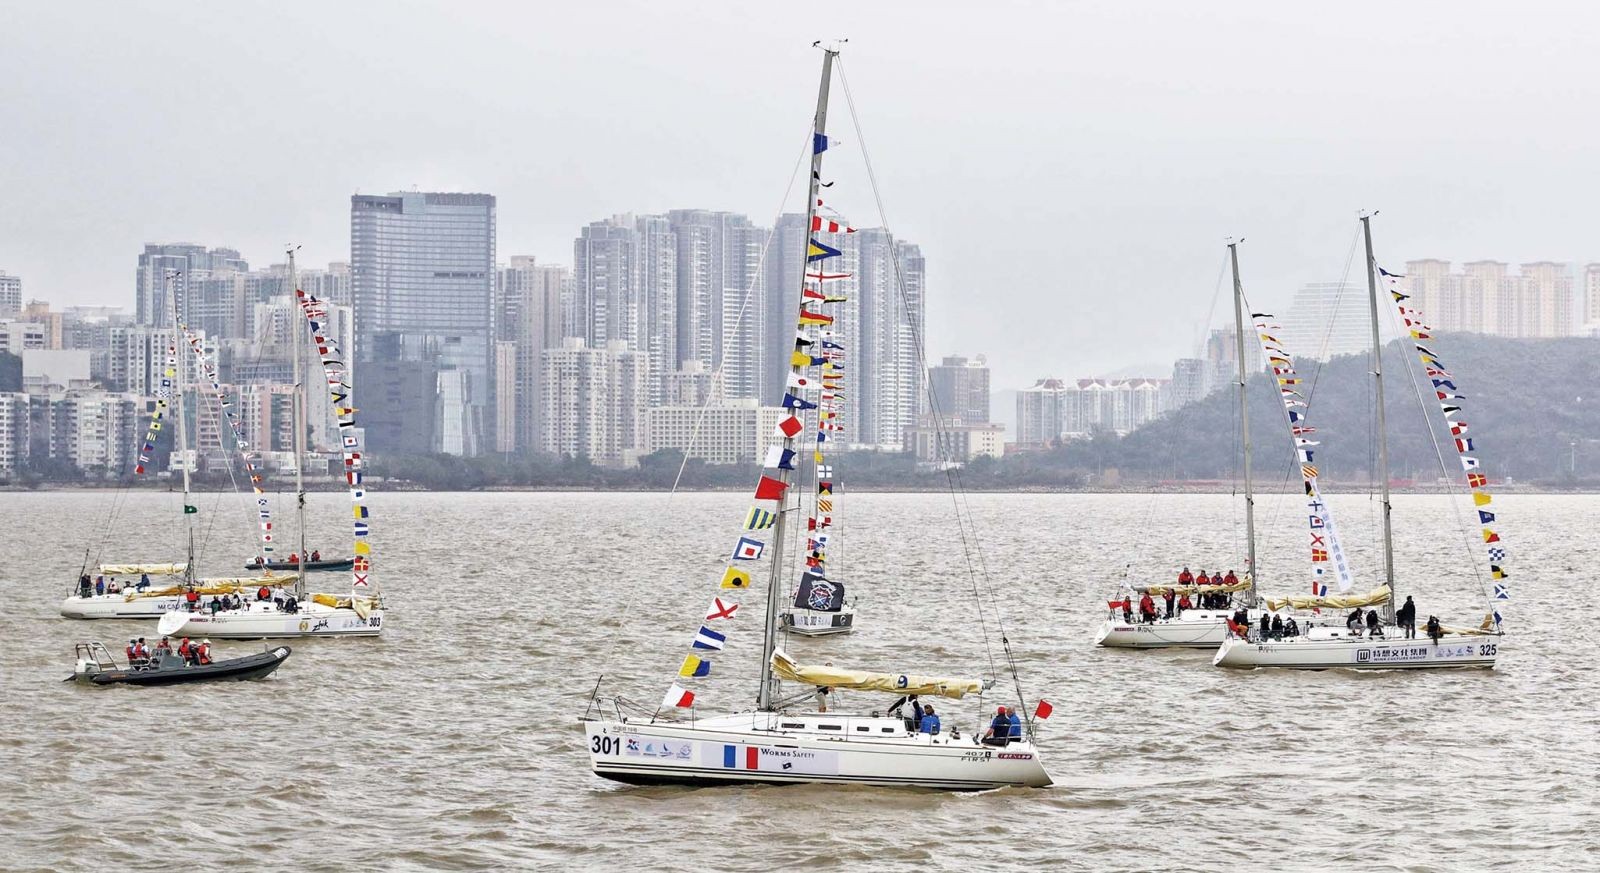 Team Pean澳門盃國際帆船賽暫佔首位